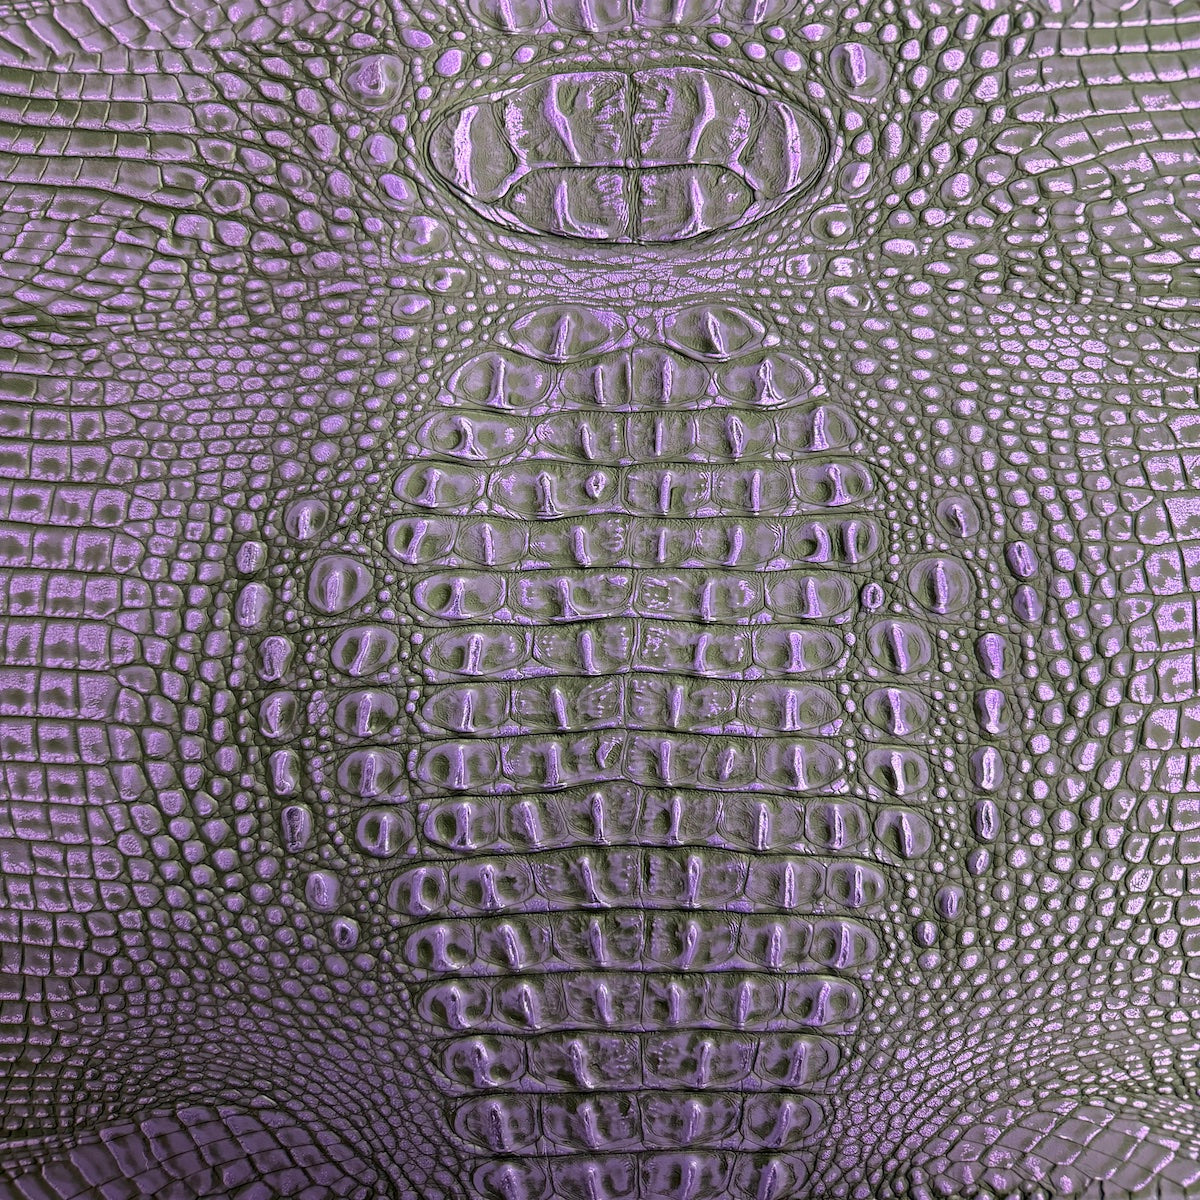 Púrpura | Tela de vinilo de piel sintética Gator de dos tonos, color negro